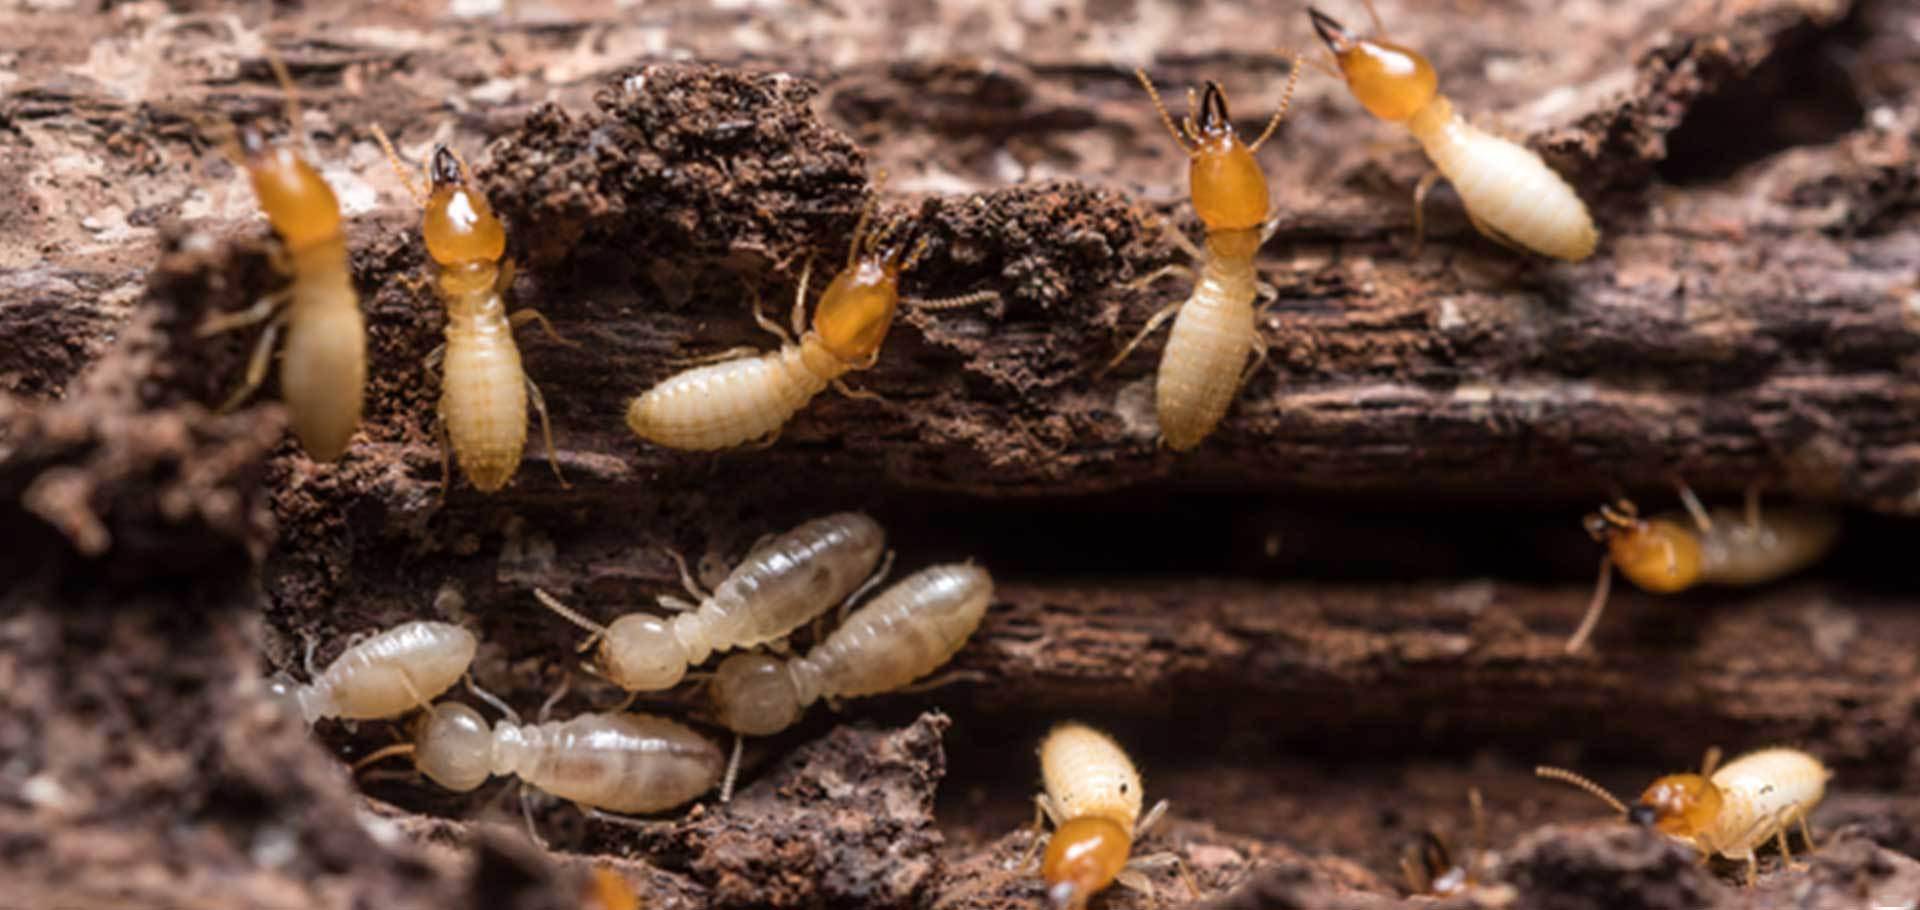 蚁圈新人入坑指南——白蚁篇其二（白蚁新手物种饲养教程） - 哔哩哔哩